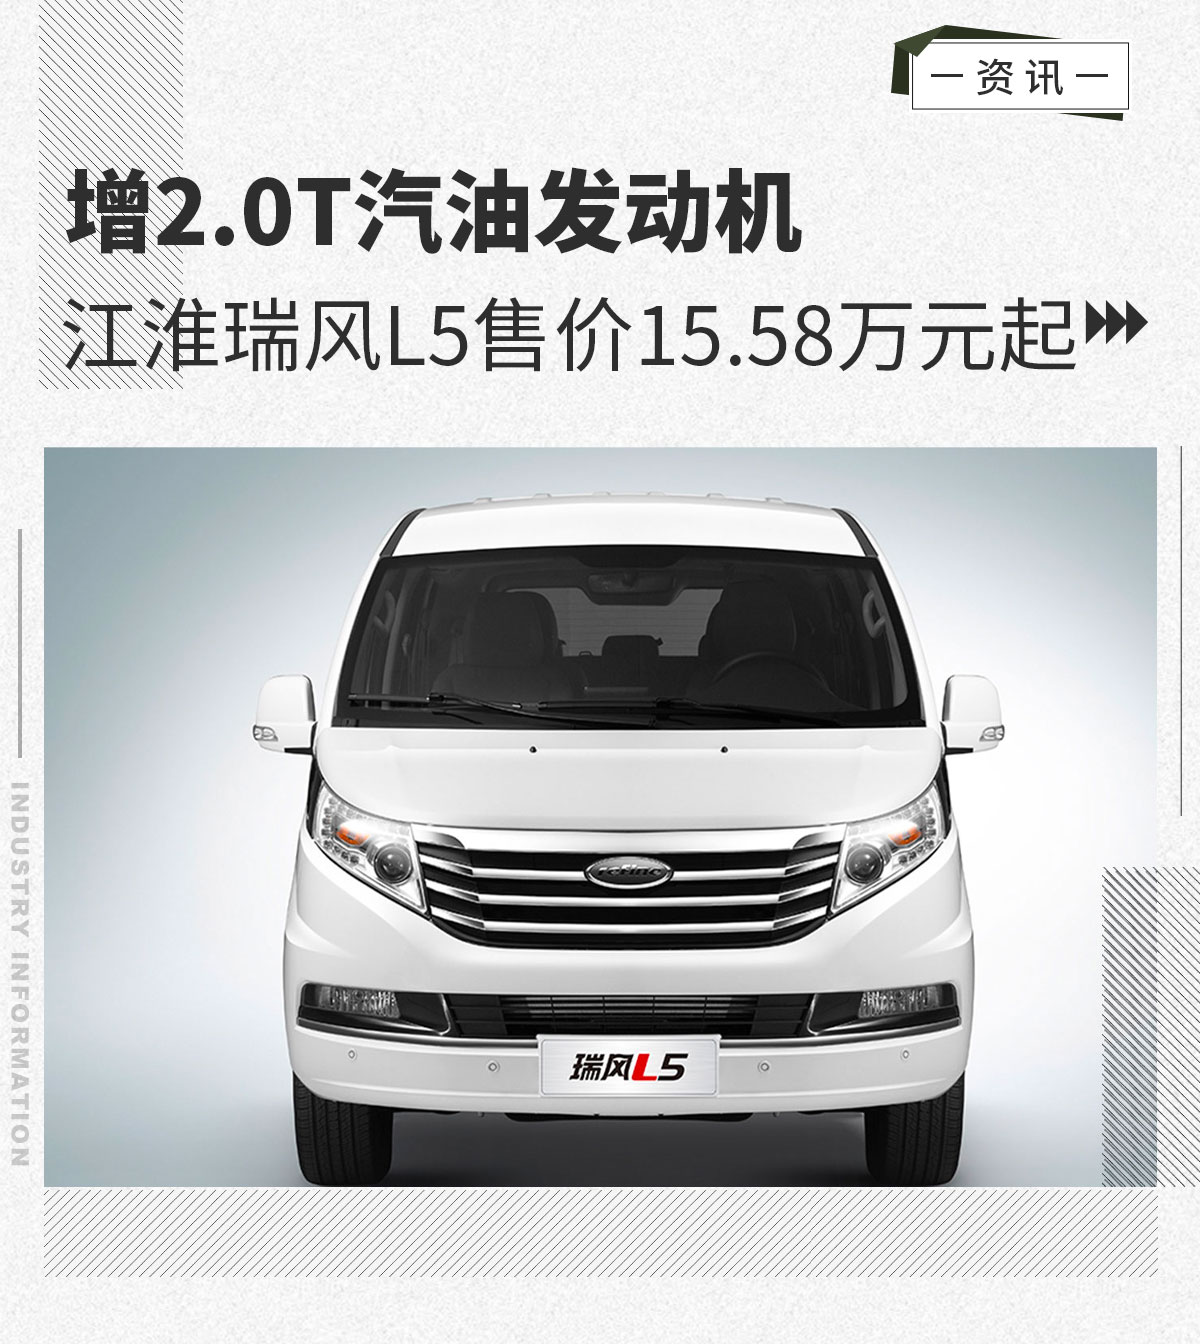 江淮瑞风L5增2.0T汽油发动机售15.58万元起